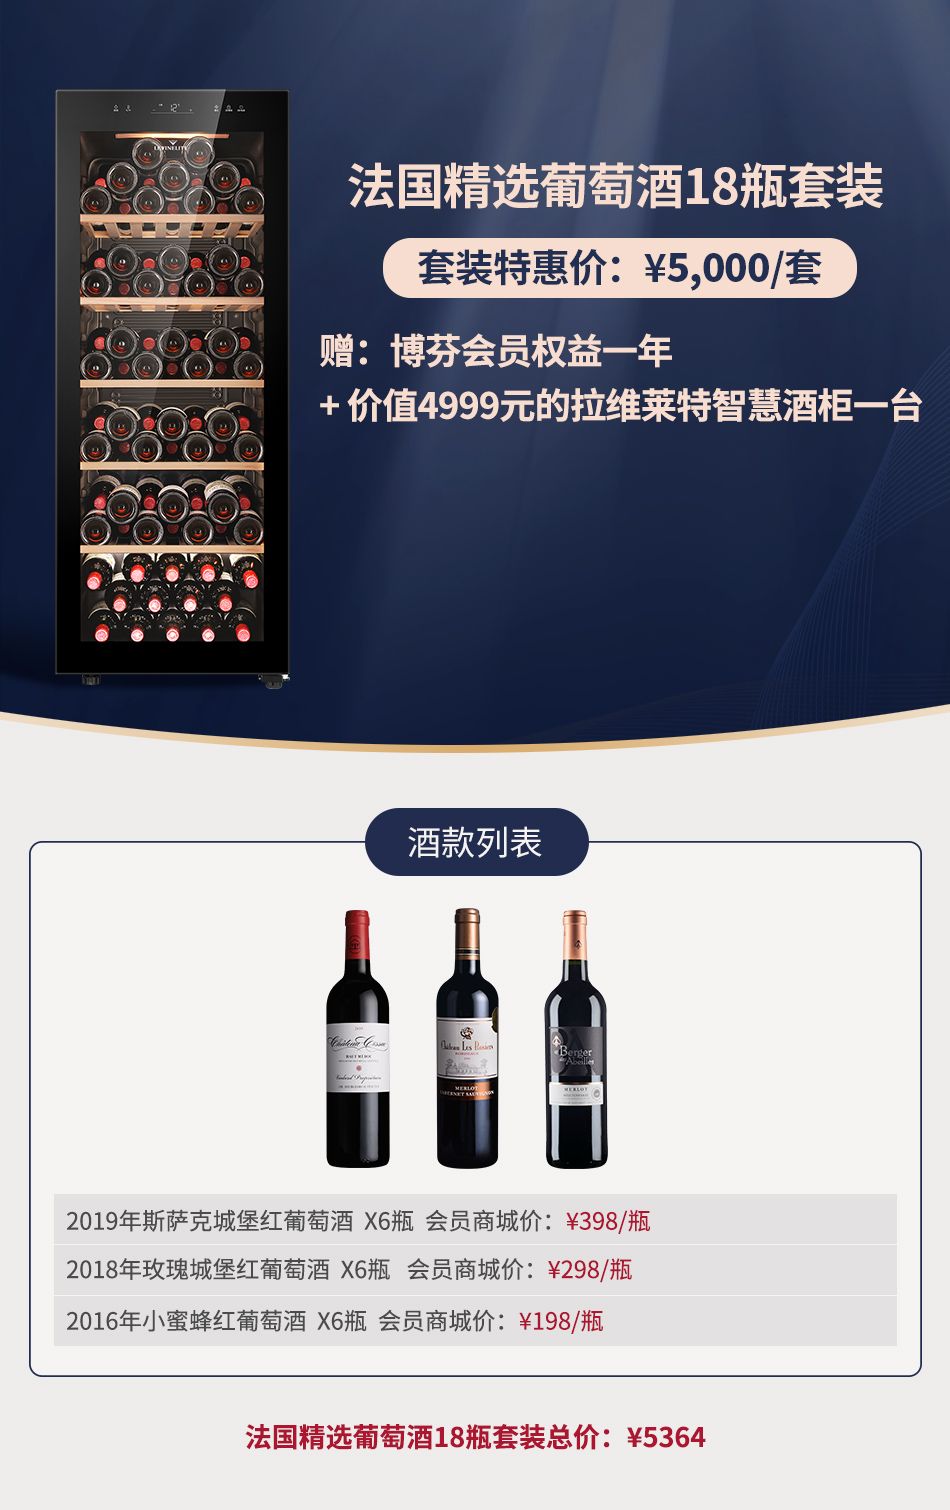 【套装B】法国精选葡萄酒18瓶套装 赠：价值4999元的拉维莱特智慧酒柜一台+博芬会员权益一年